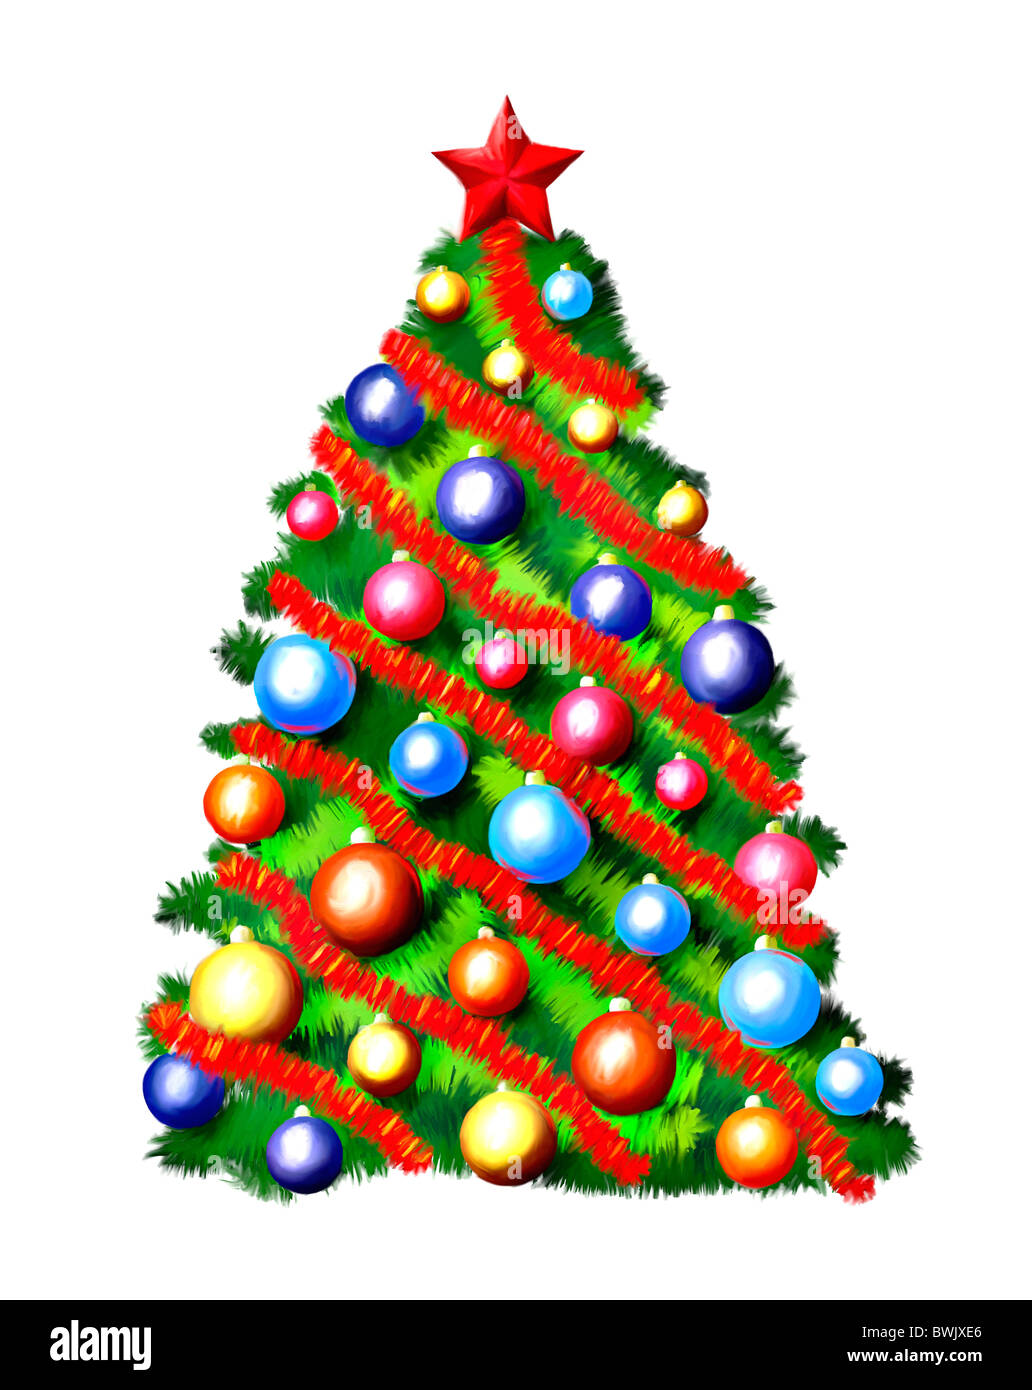 Bunte Weihnachtsbaum Illustration mit Ölgemälde aussehen. Isoliert auf weißem Hintergrund. Stockfoto